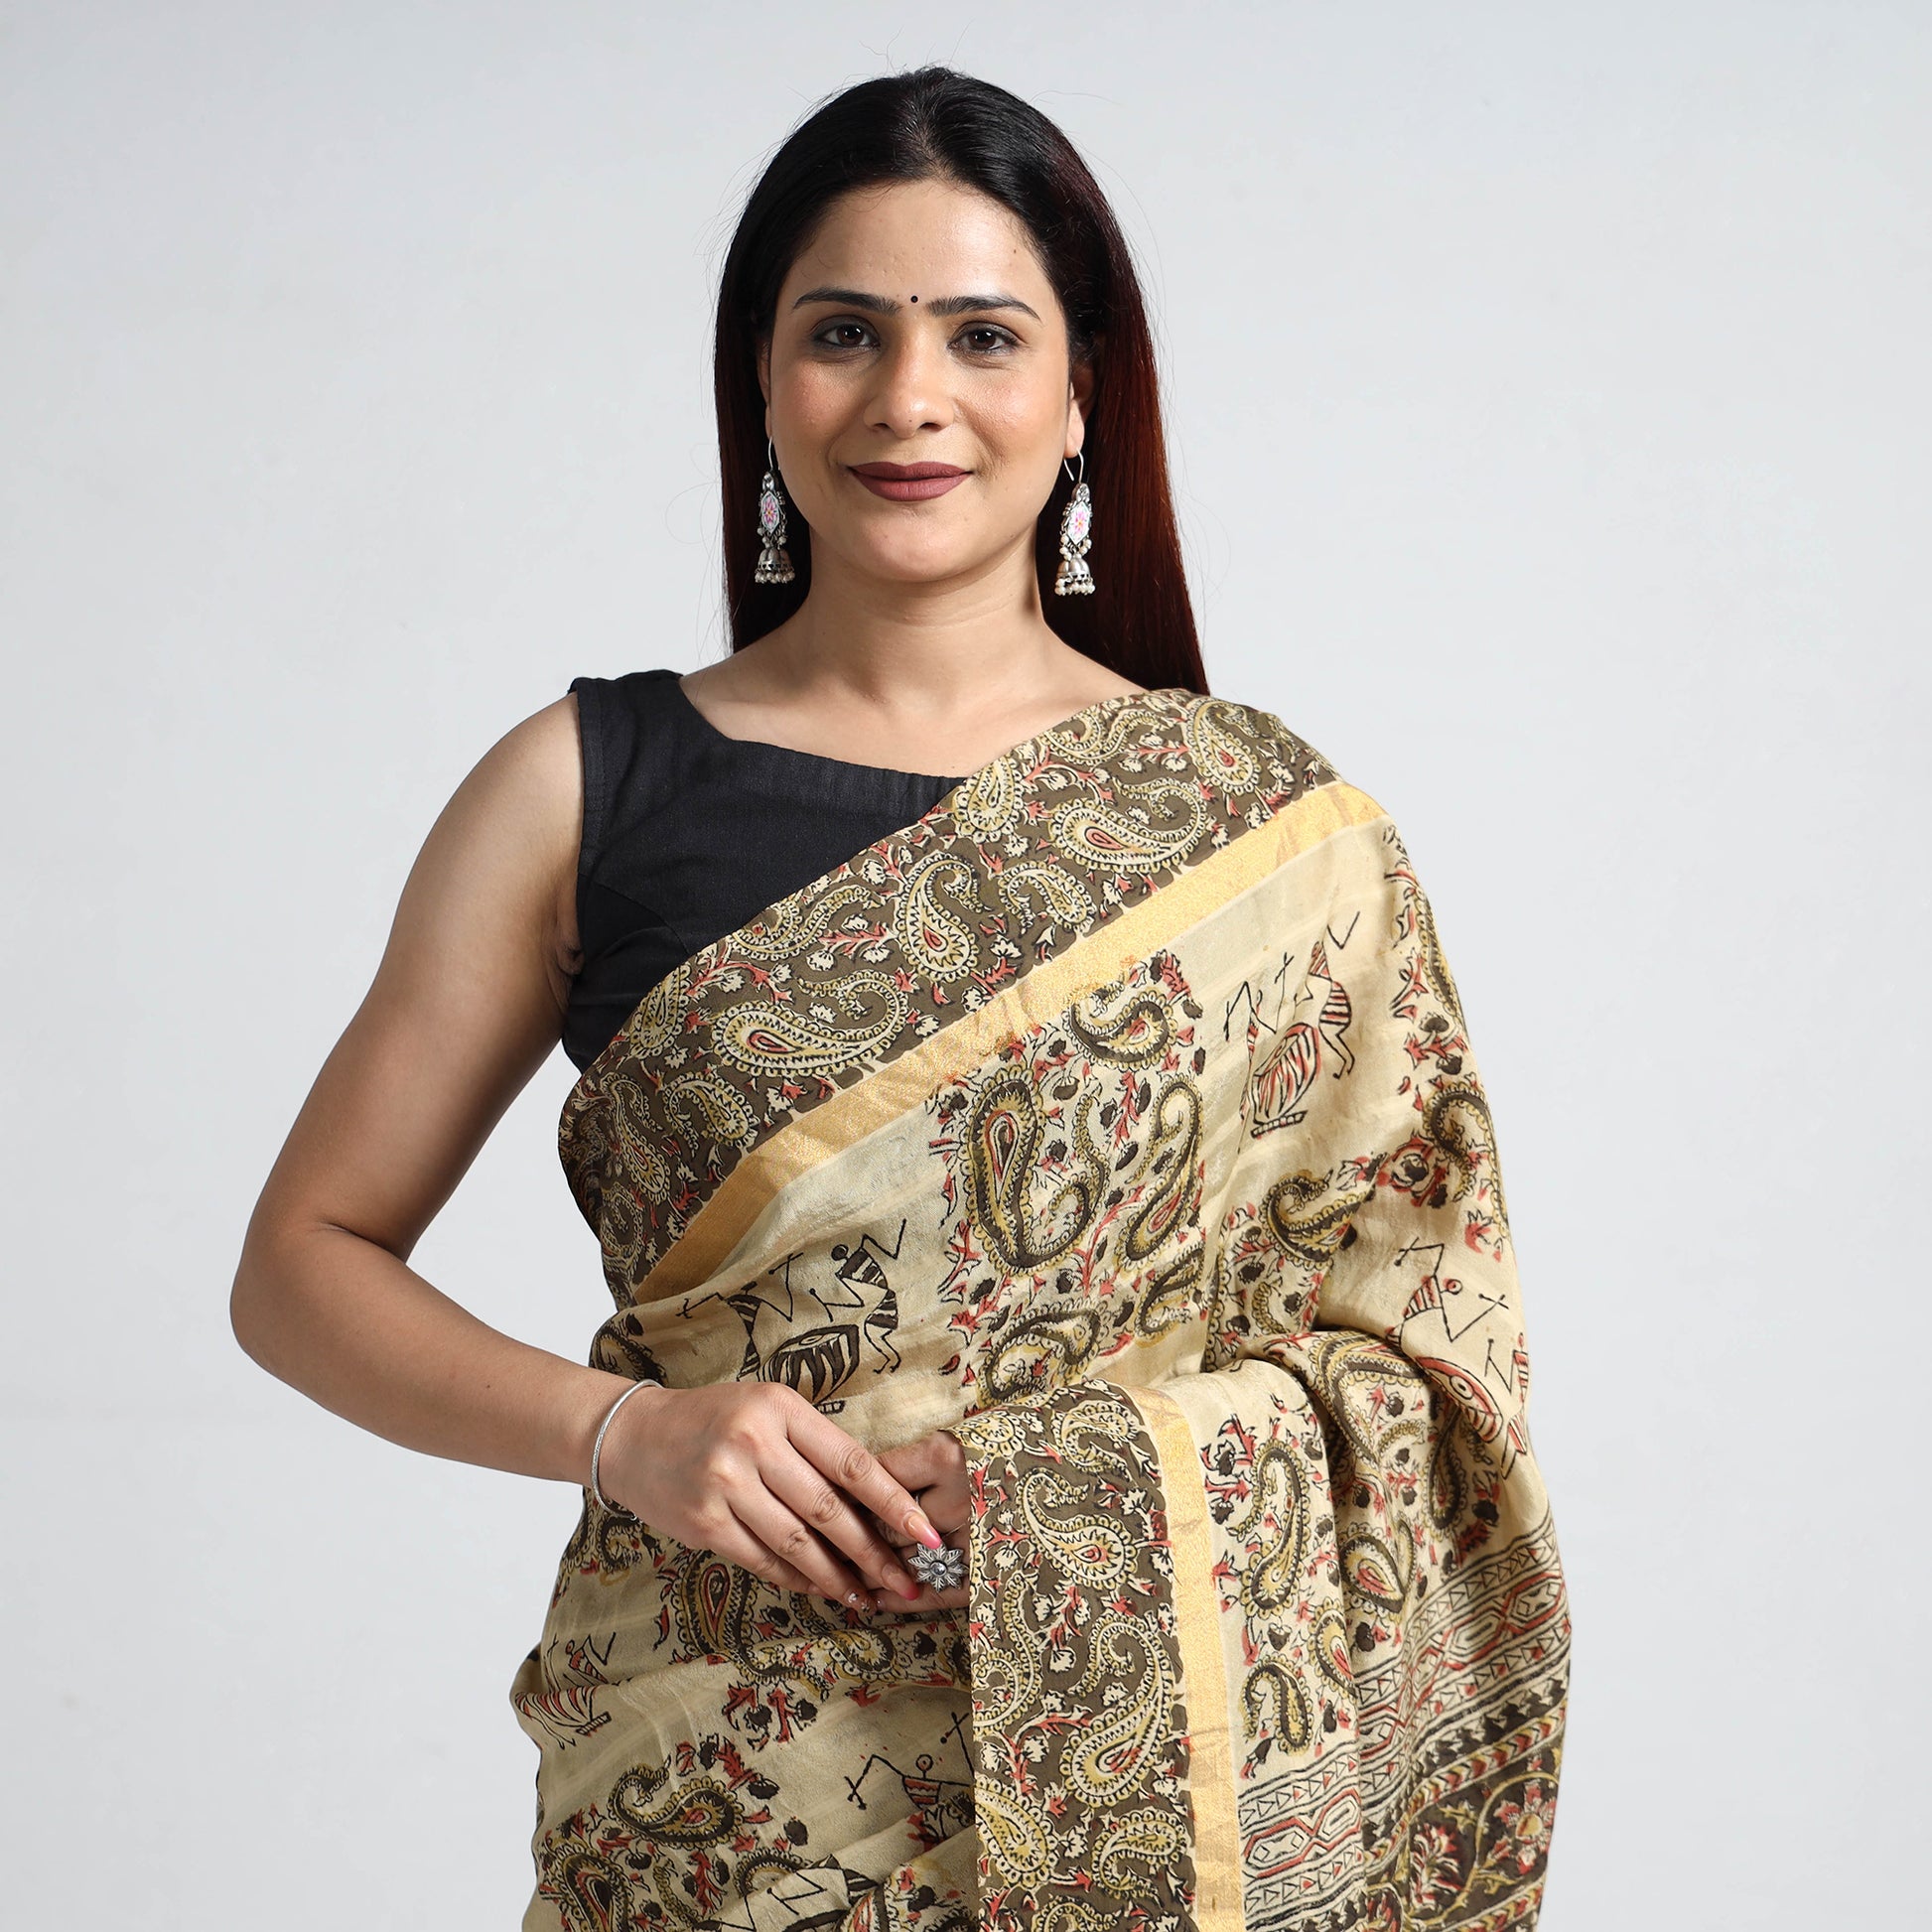 kalamkari printed cotton saree